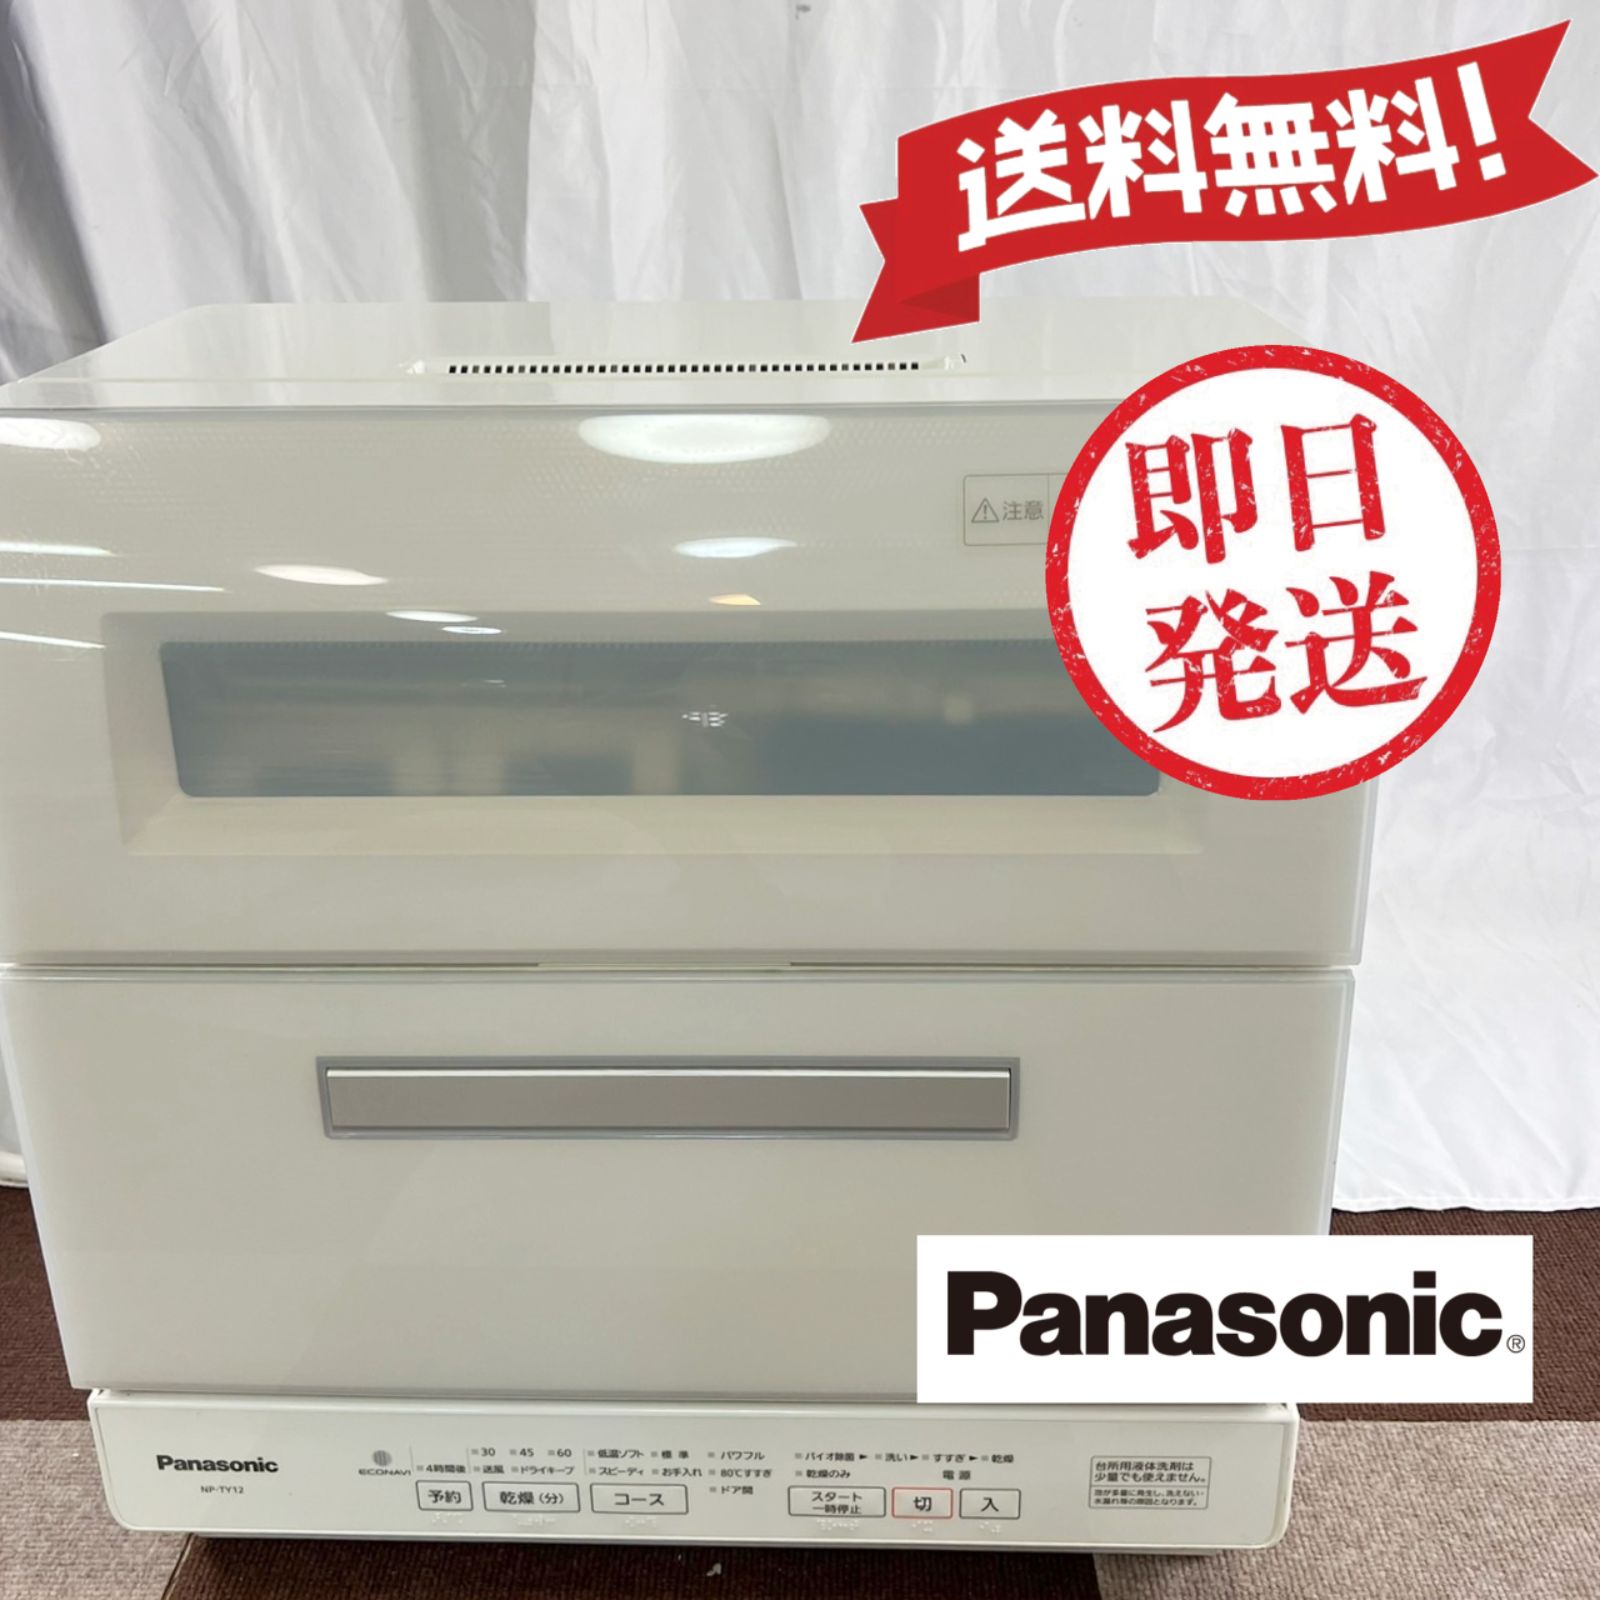 パナソニック NP-TY12 ・ 2019年製 食洗器 ホワイト(美品) - メルカリ